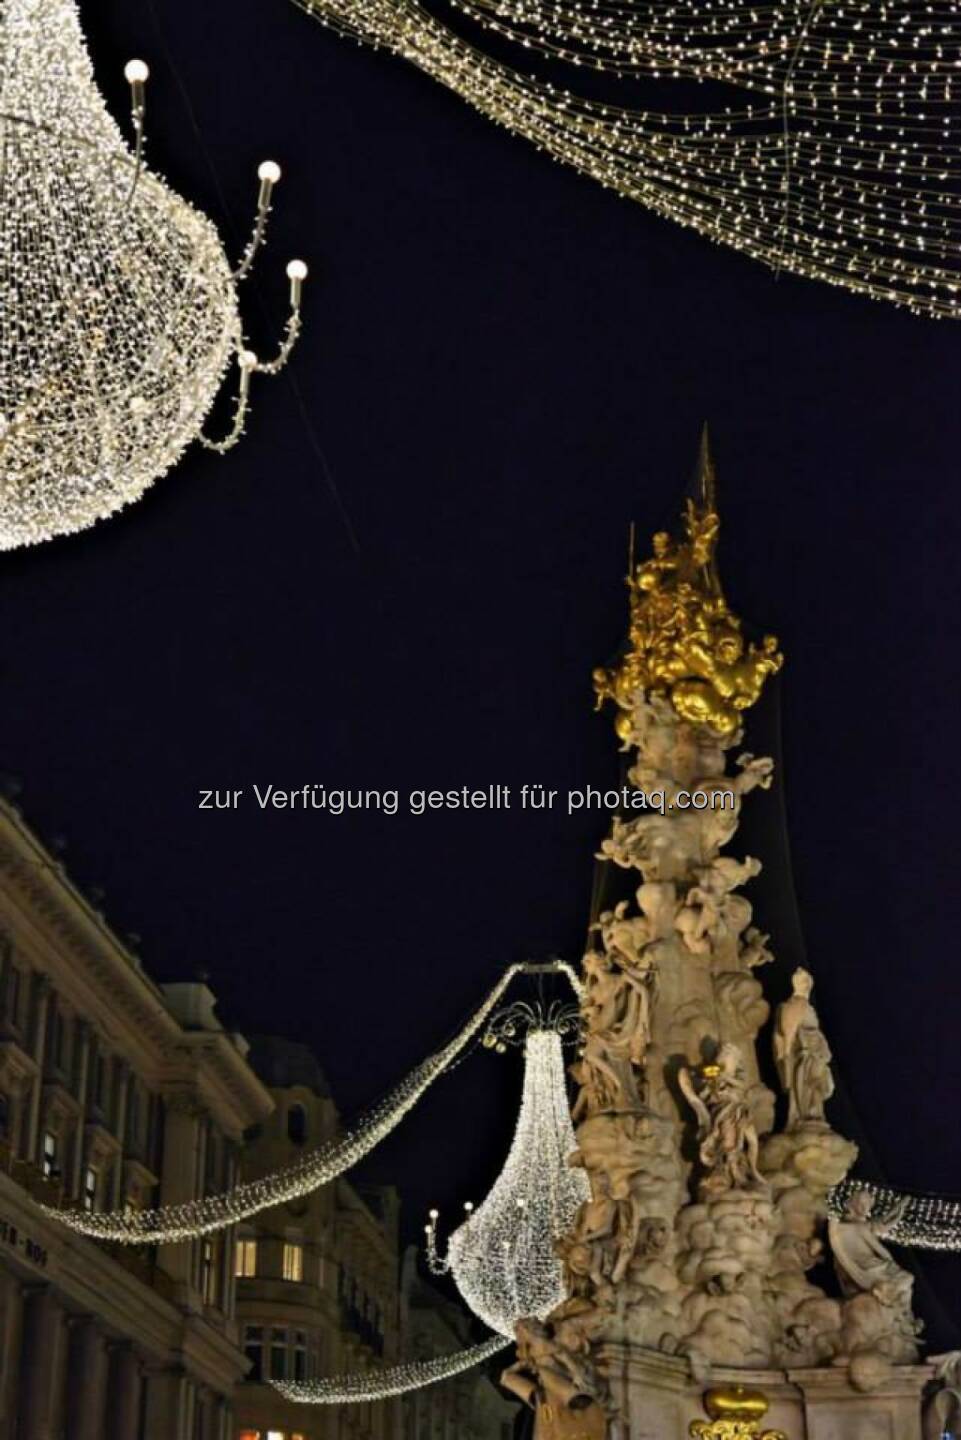 Pestsäule, Graben, Wien, Lichter im Advent, www.fotomoldan.at